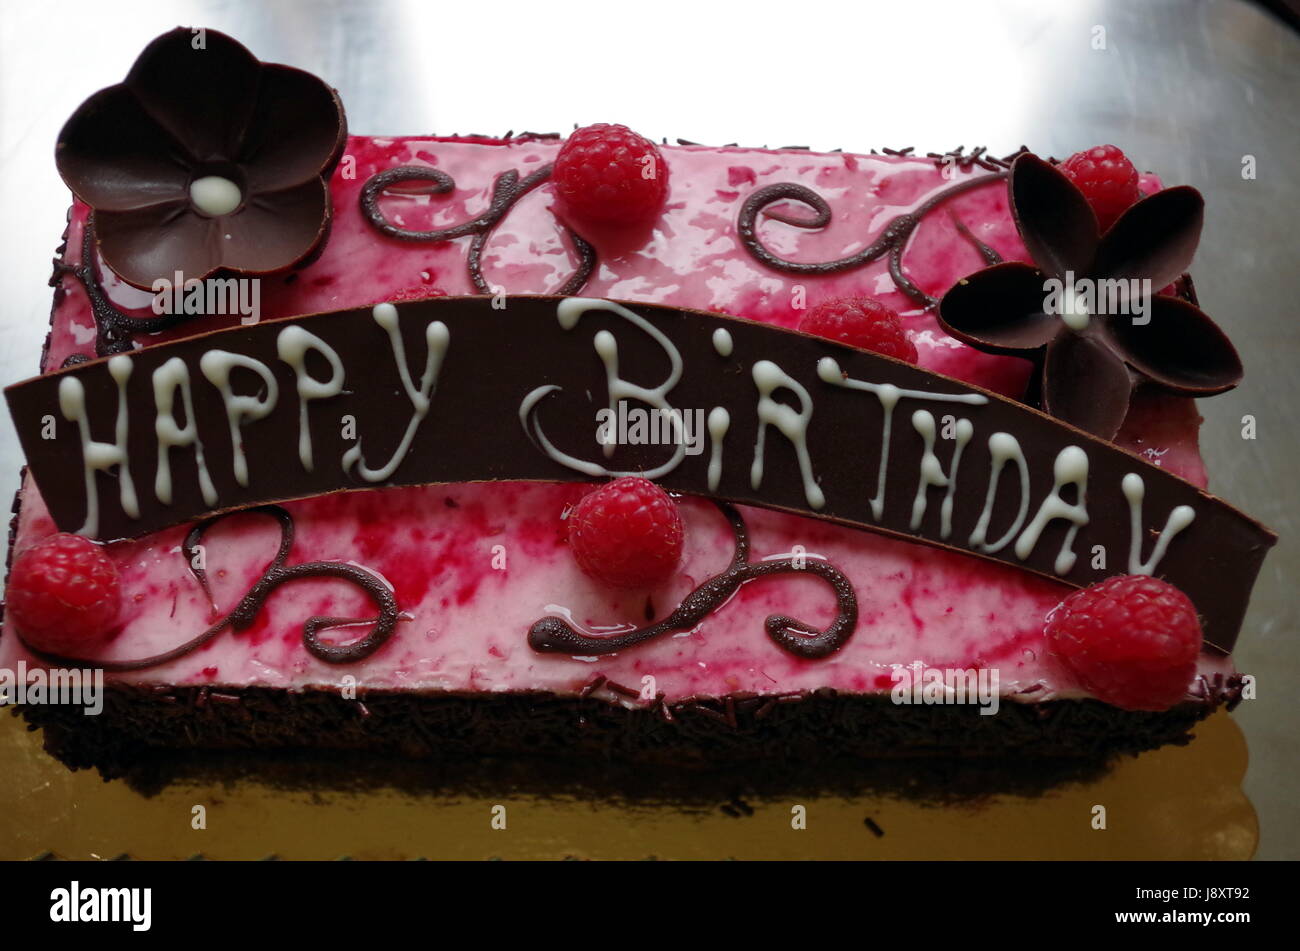 Schokolade Geburtstagskuchen mit Schokolade Blume und Himbeer Dekorationen und eine Schokolade HAPPY BIRTHDAY zu unterzeichnen. Stockfoto